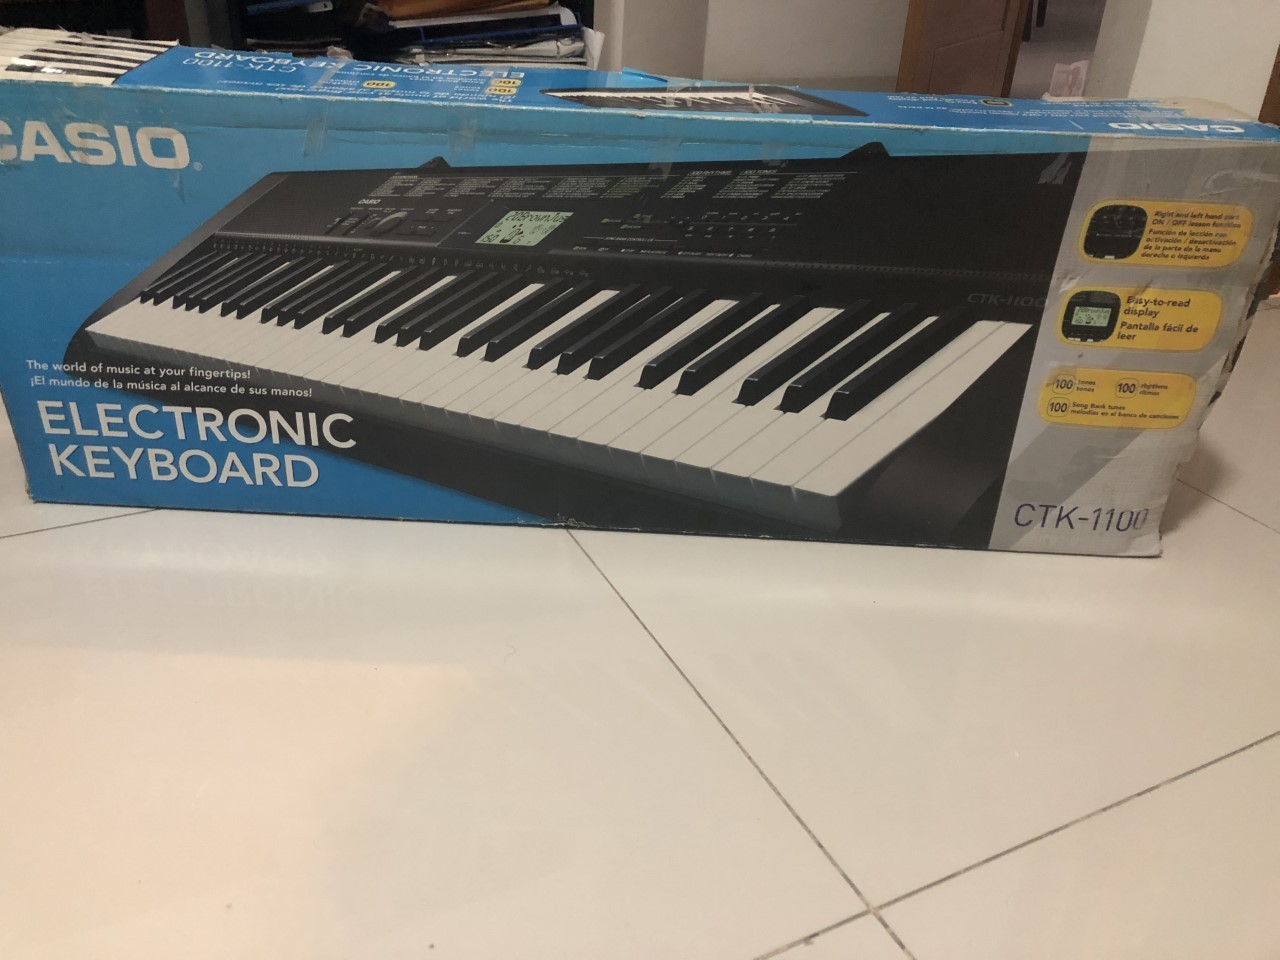 instrumentos musicales - Vendo teclado electrónico como nuevo Casio CTK-1100 ideal para tocar y practicar 0